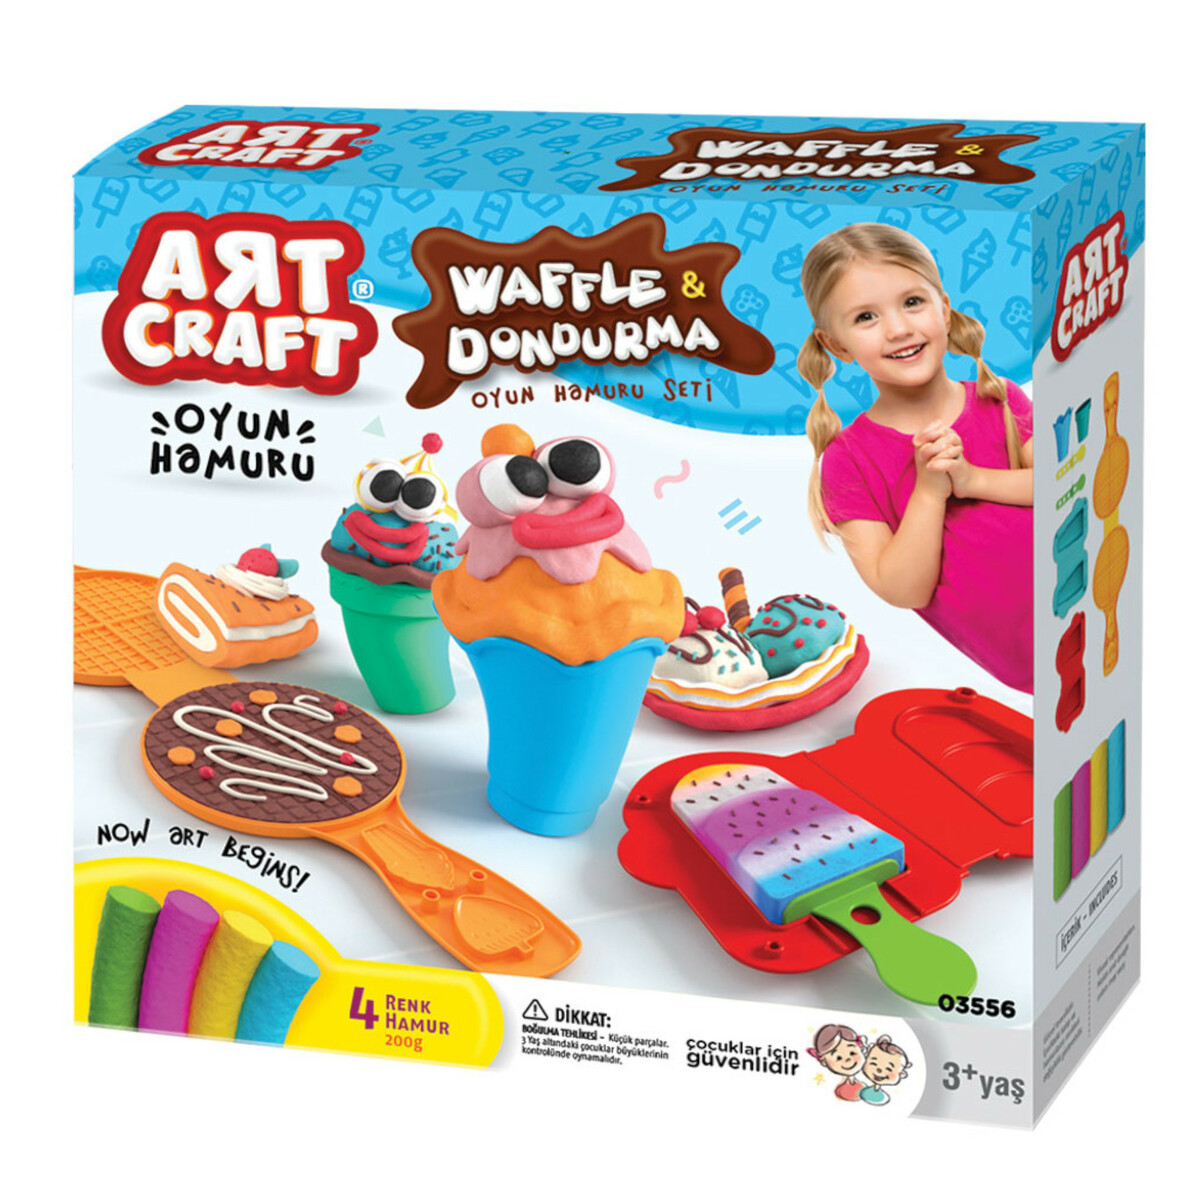 Dede Waffle & IceCrem Douhg Set 03556